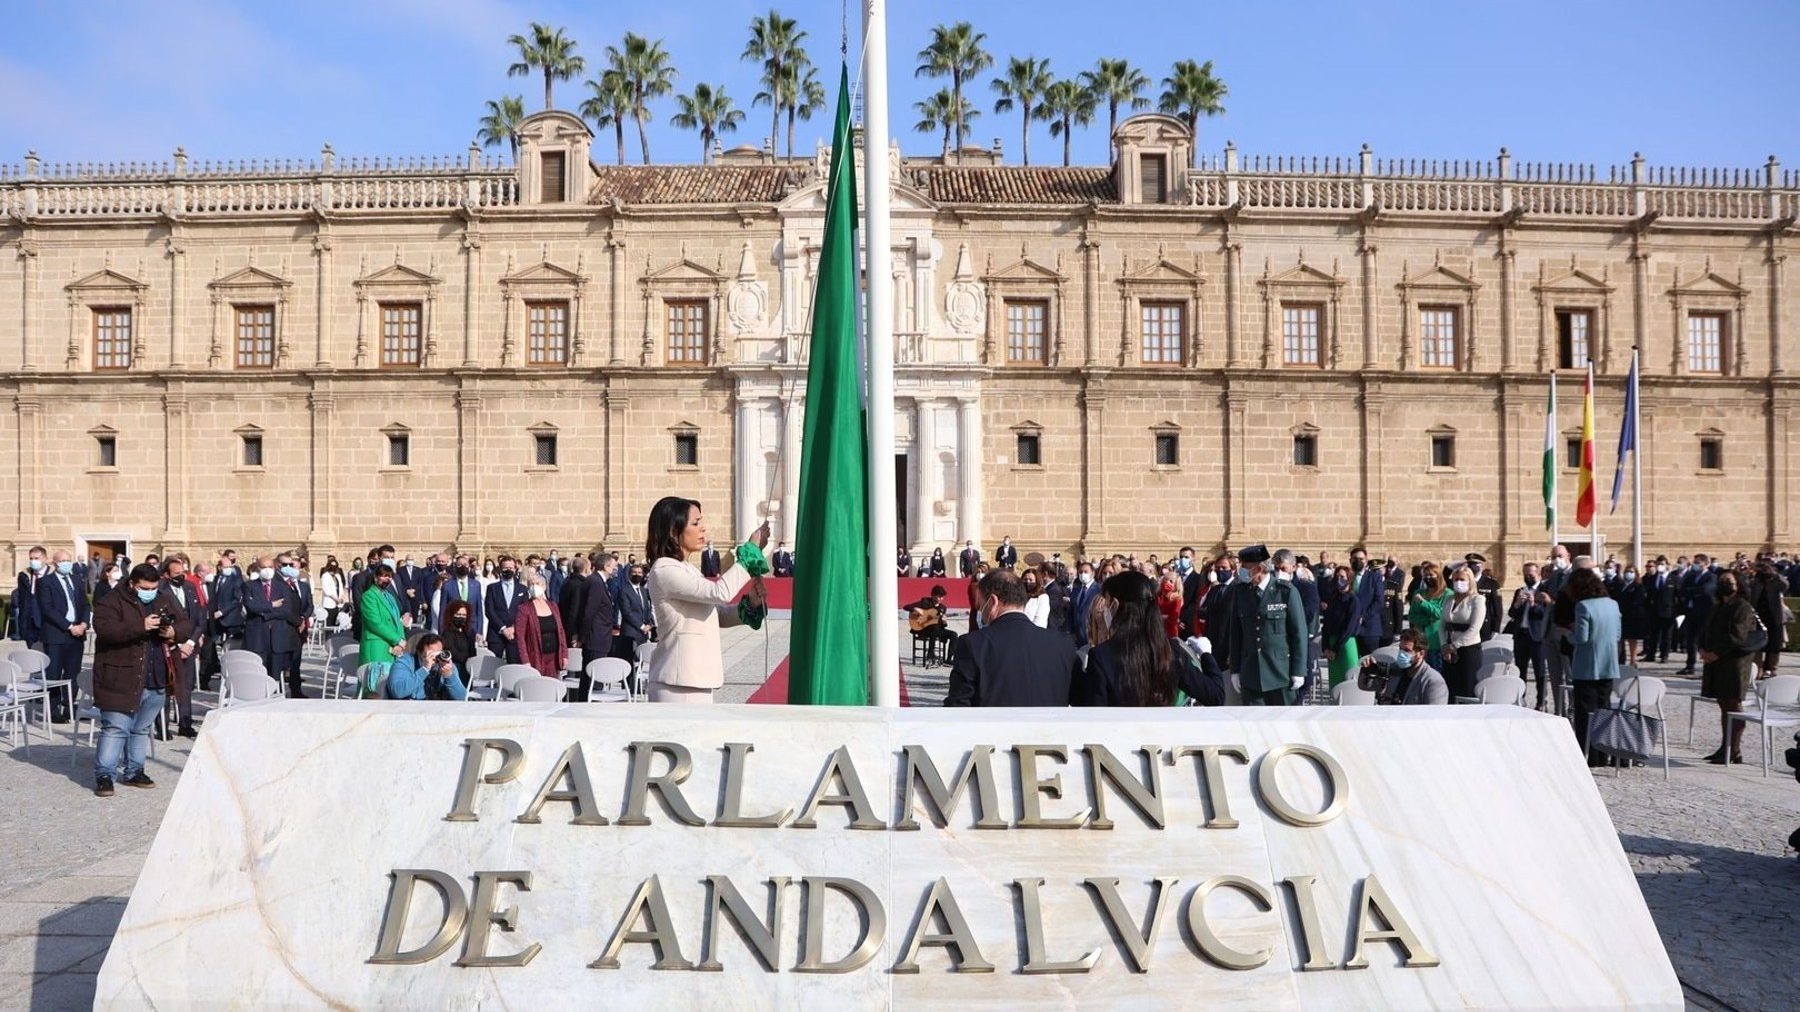 La presidenta del Parlamento de Andalucía, Marta Bosquet, izando la bandera de la comunidad (JOAQUÍN CORCHERO / EUROPA PRESS).